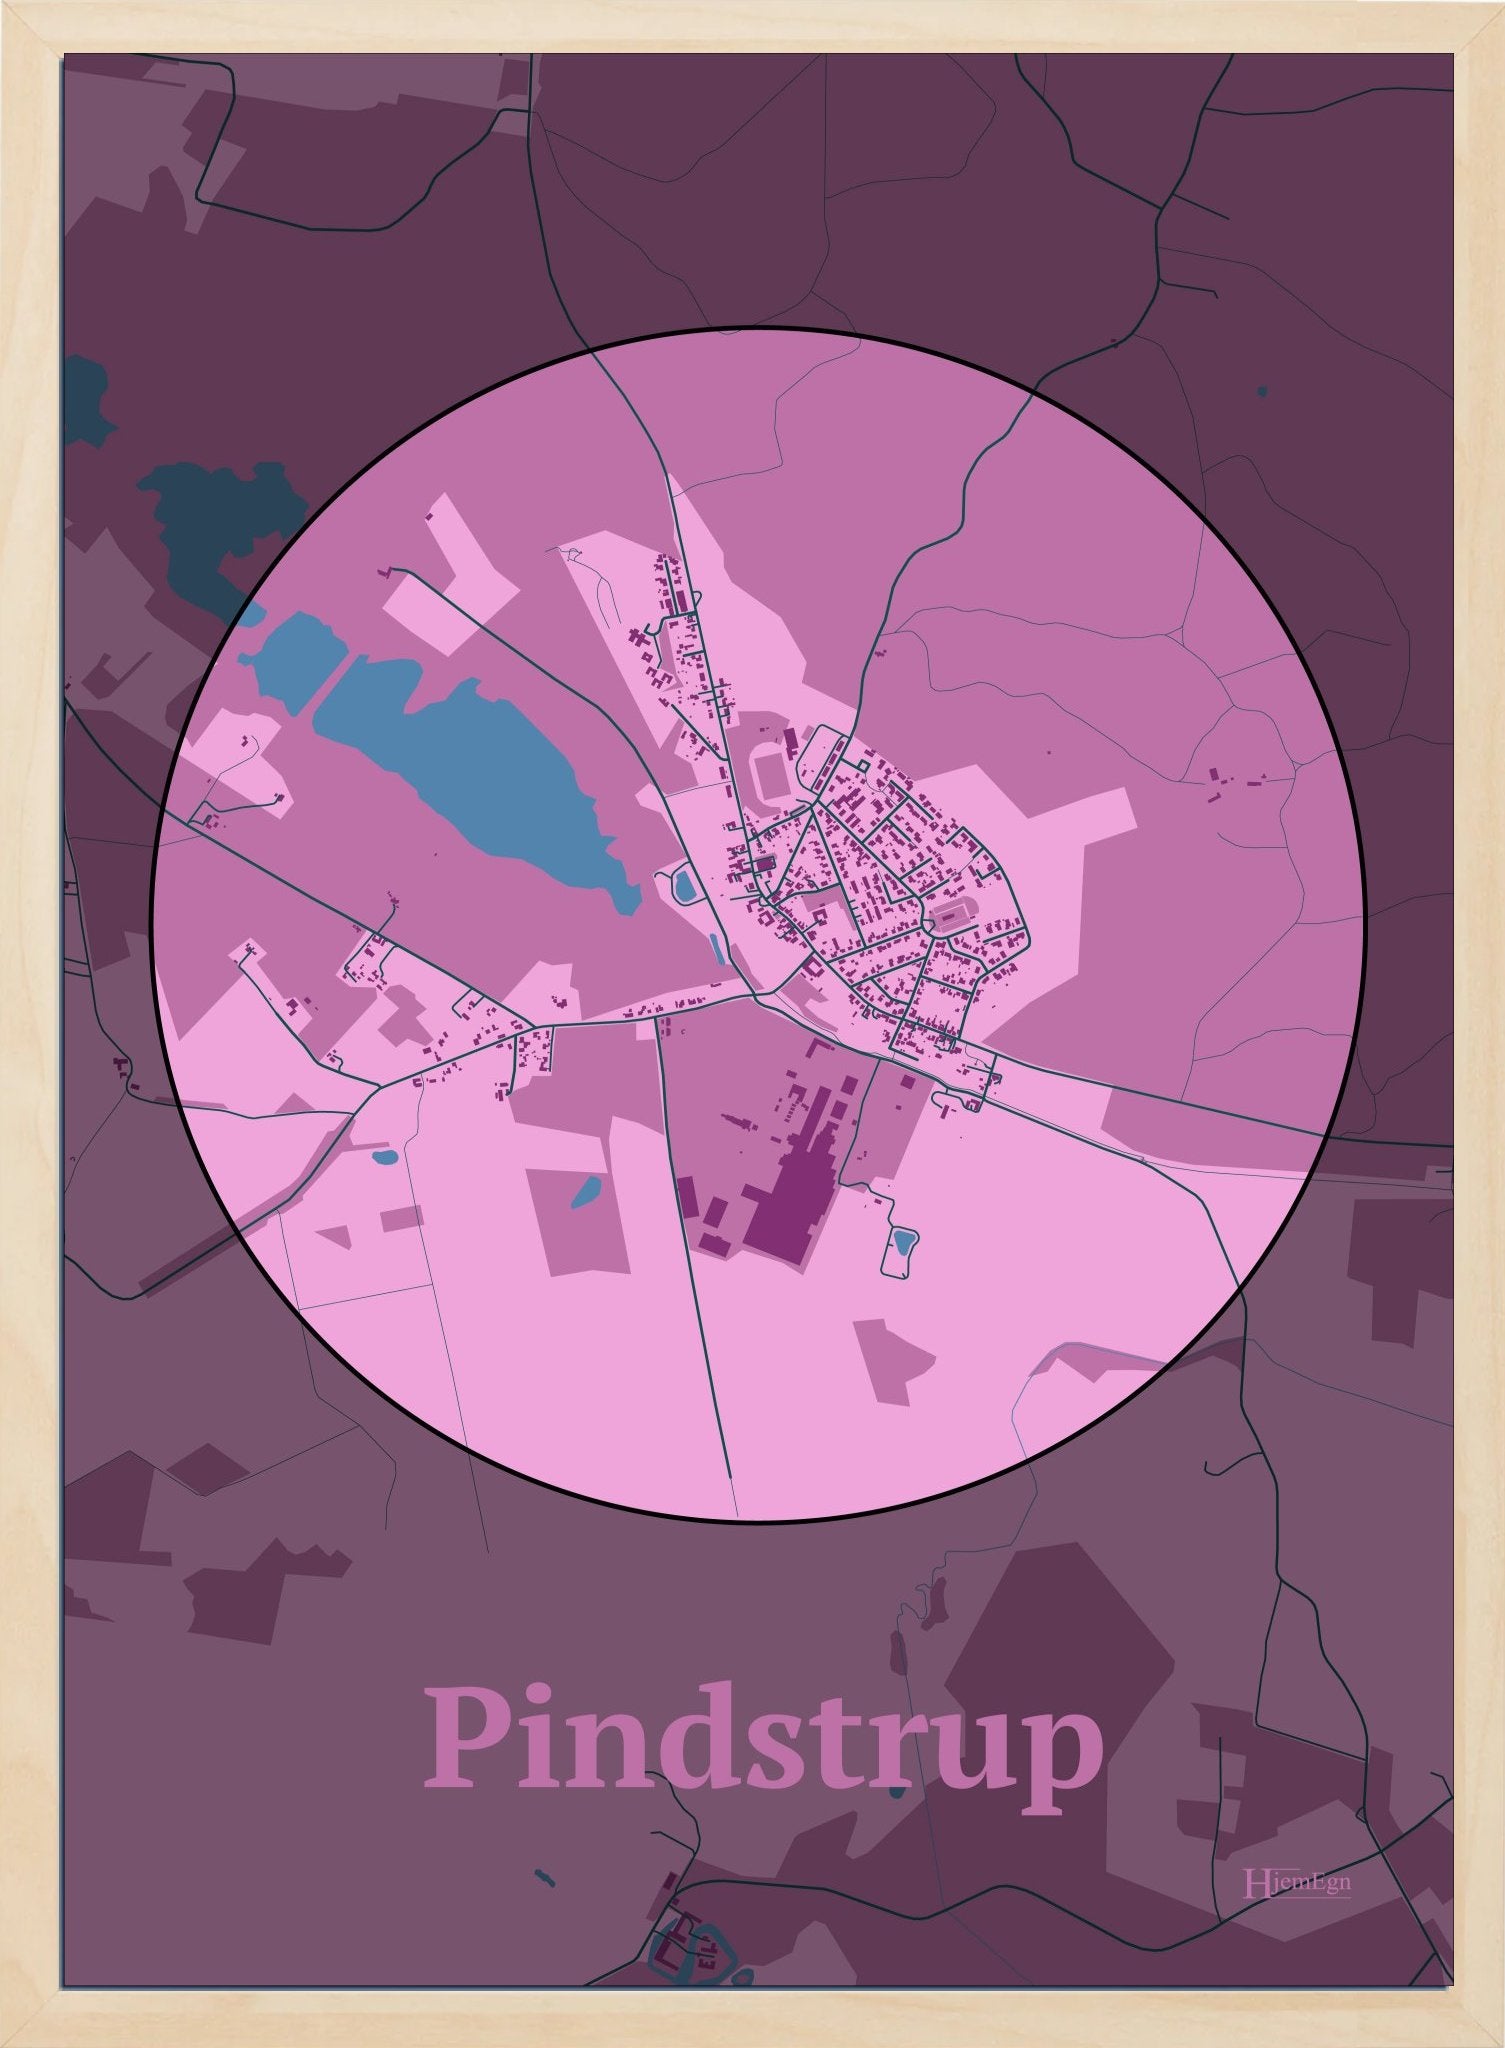 Pindstrup plakat i farve pastel rød og HjemEgn.dk design centrum. Design bykort for Pindstrup